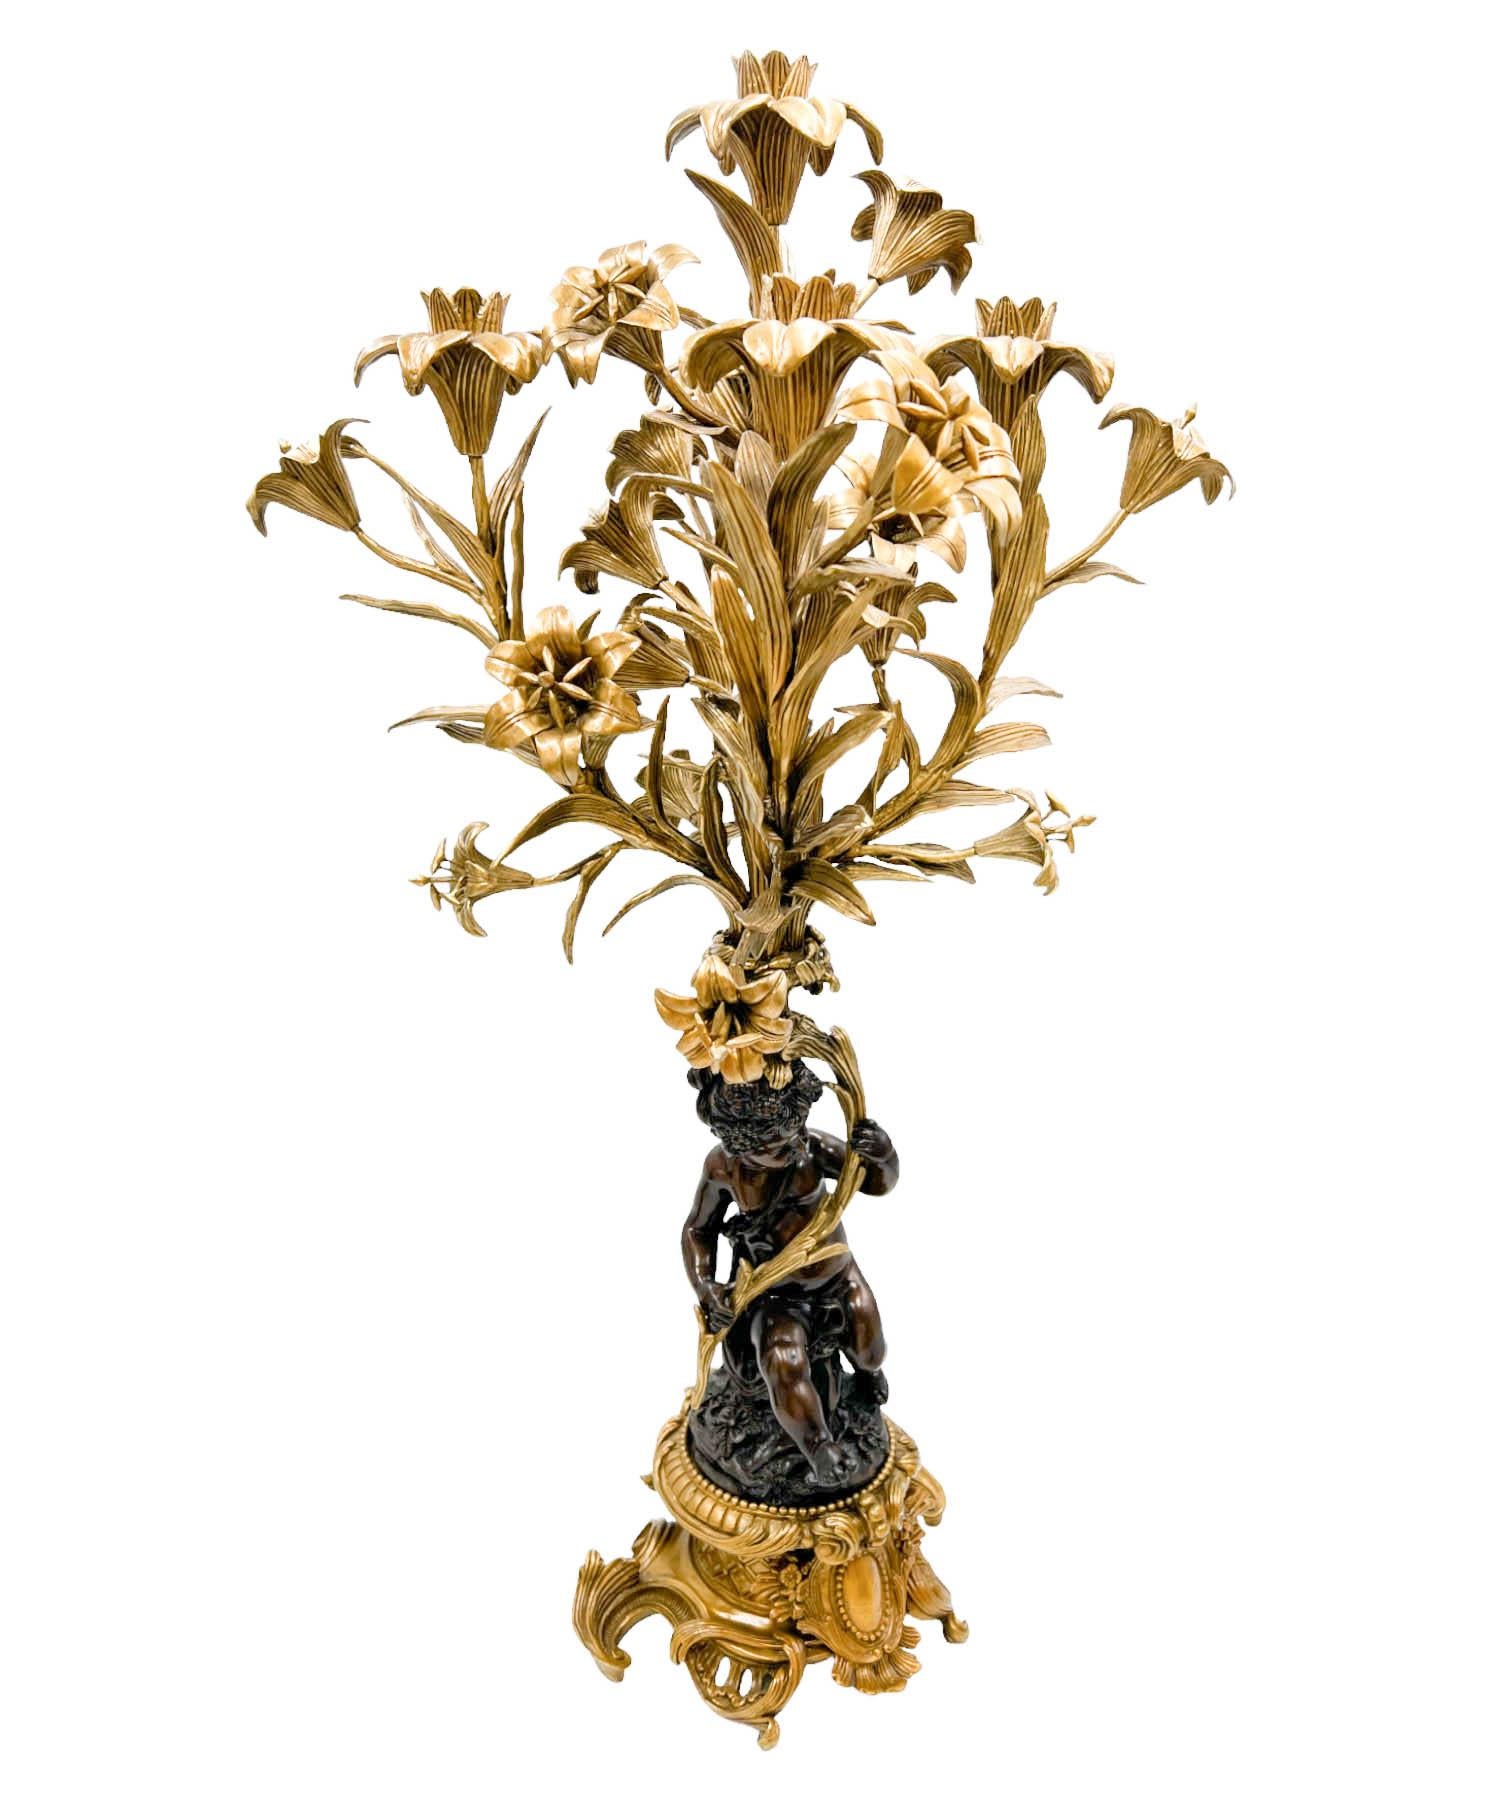 Ein sehr seltenes Paar vergoldete Bronze montiert Putto 5-Arm-Kandelaber von United Wilson.  Das Paar spiegelt die Ästhetik des Rokoko wider, die sich durch neoklassizistische Einflüsse, verschnörkelte Details und elegante Designelemente